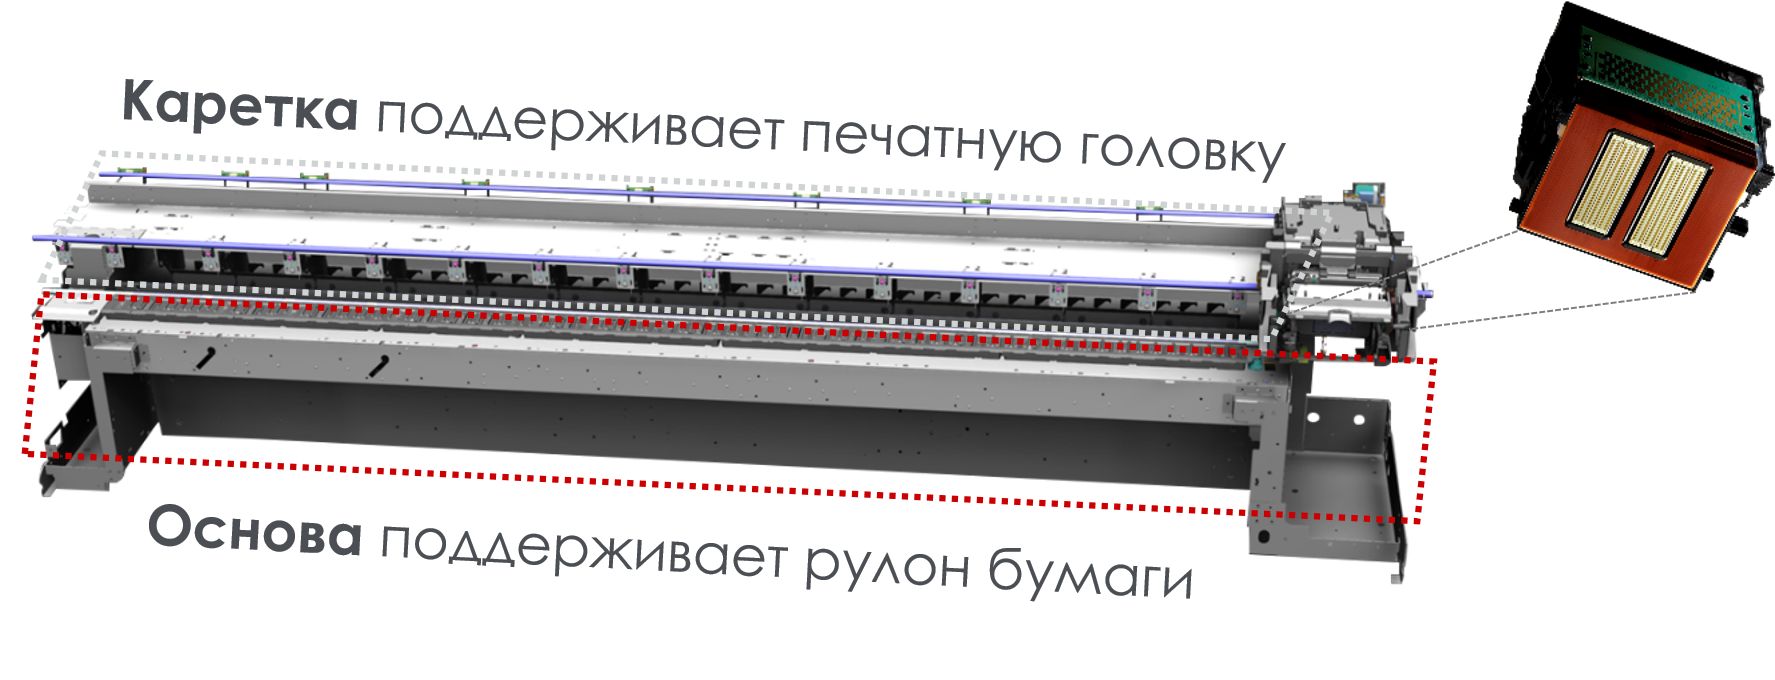 Расширение линейки imagePROGRAF: серия TX - 3